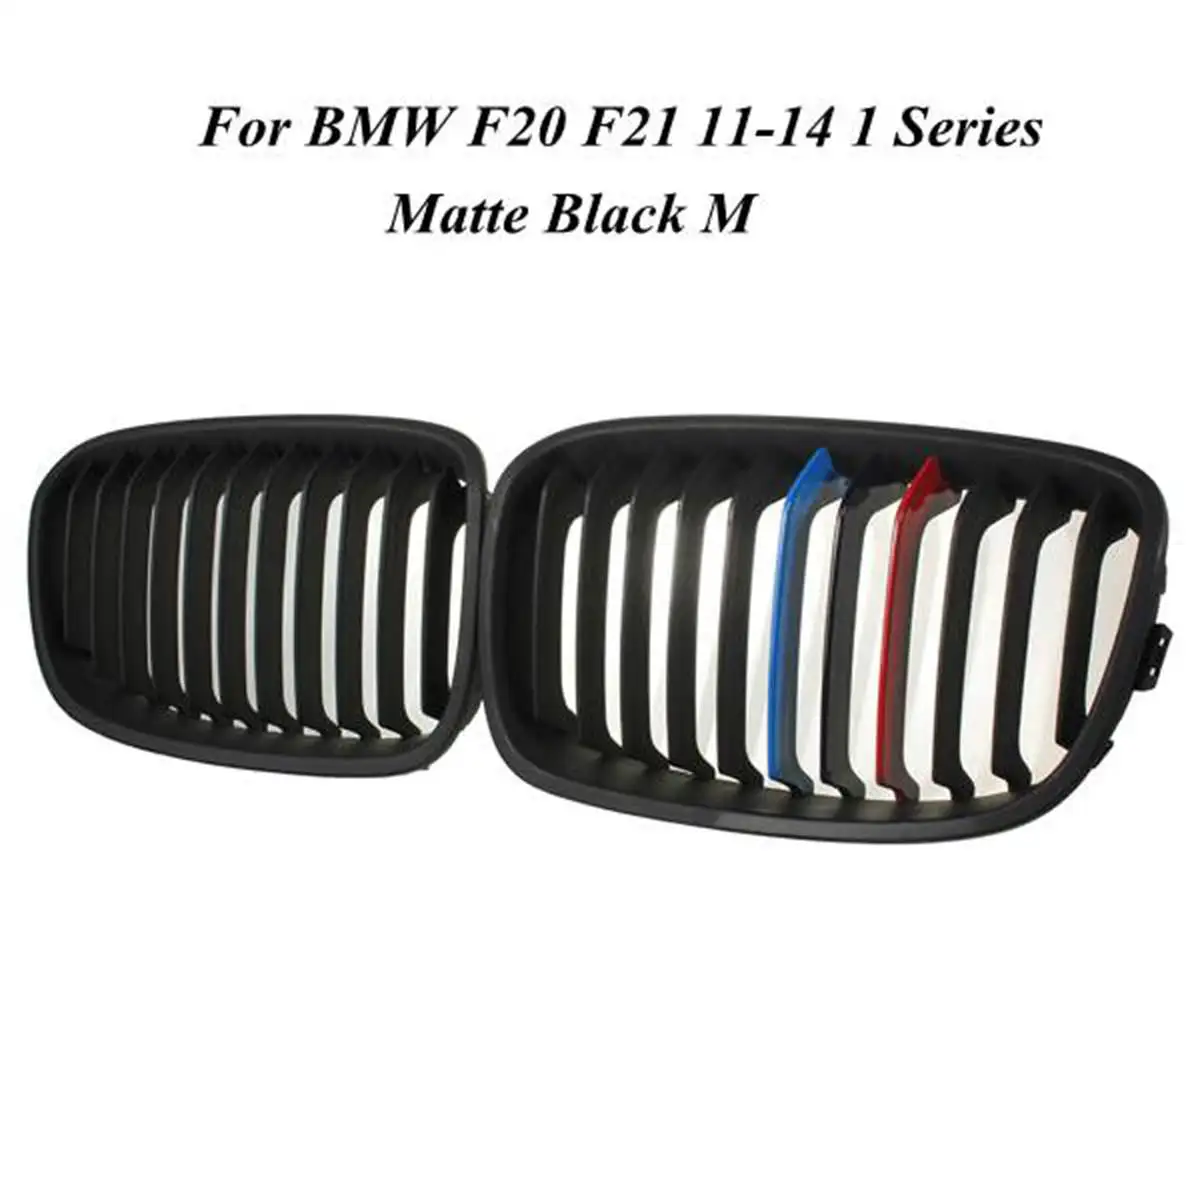 Для BMW F20 F21 2011 2013 1 серия, глянцевая матовая Черная Широкая Передняя решетка для почек, автостайлинг, гоночные решетки - Цвет: Matte Black M